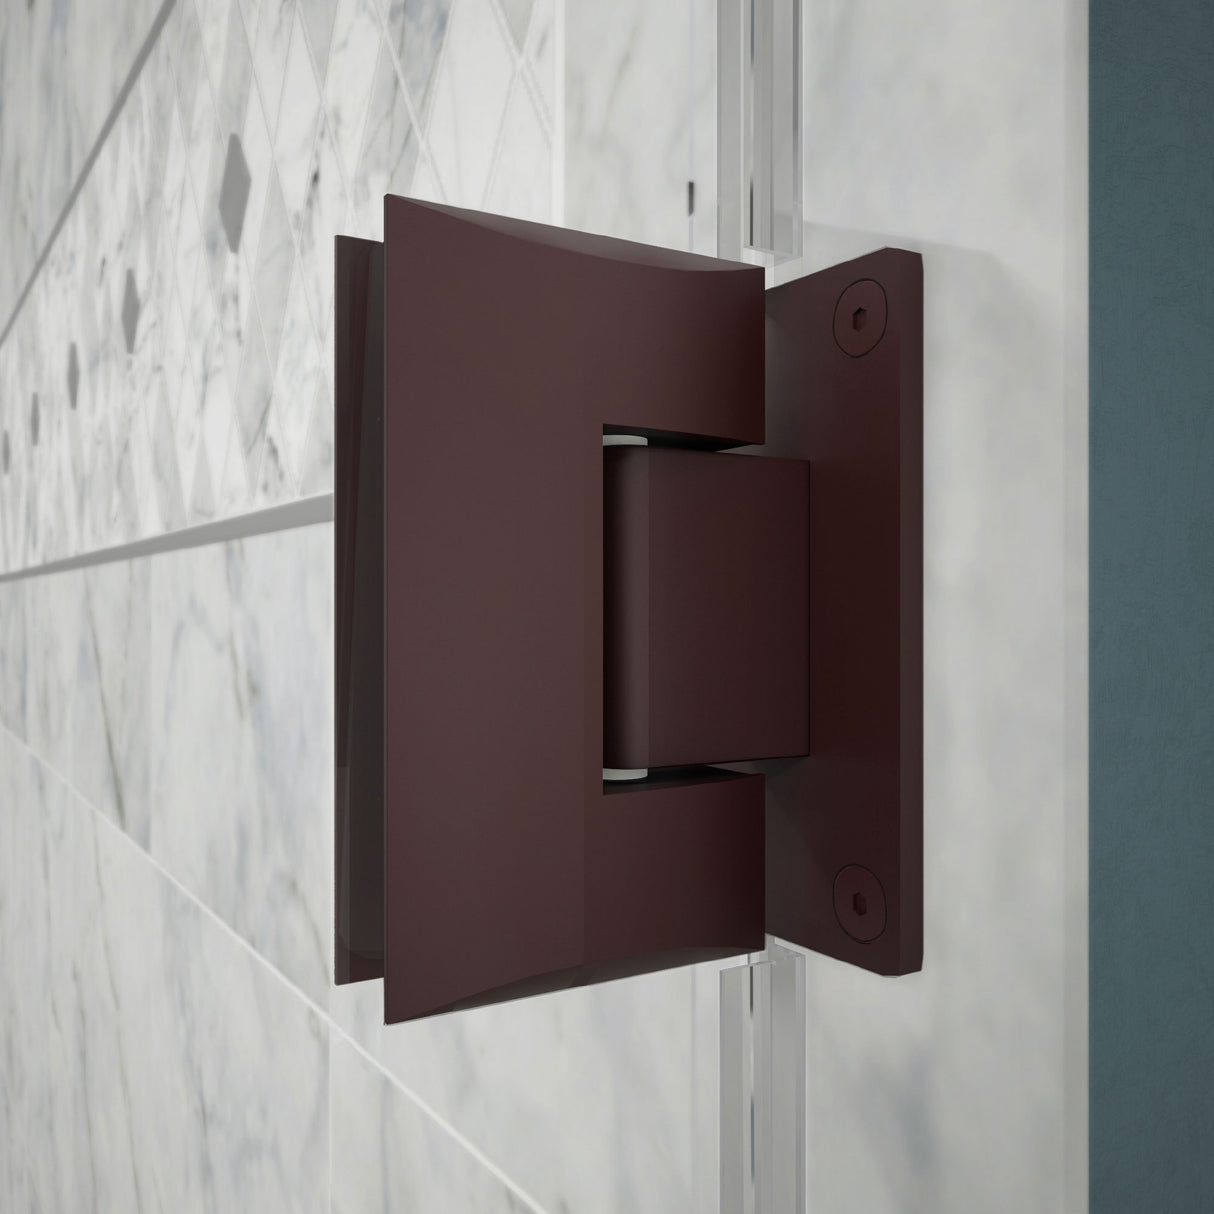 DreamLine Unidoor 59-60 in. W x 72 in. H Frameless Hinged Shower Door with Shelves in Oil Rubbed Bronze